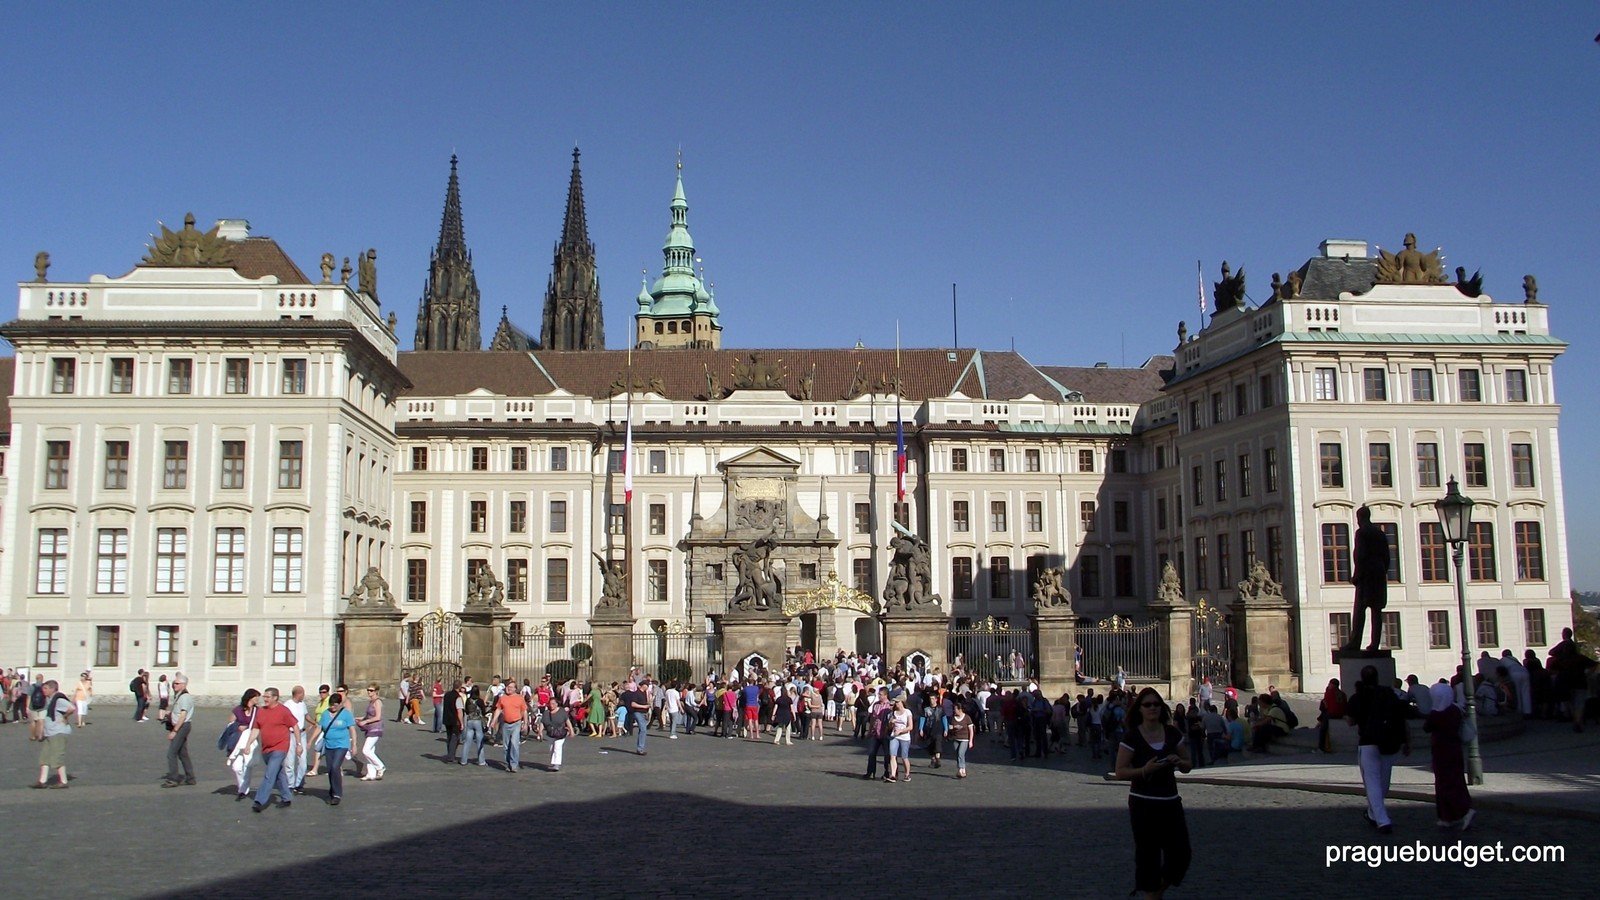 Prag Budget Tours